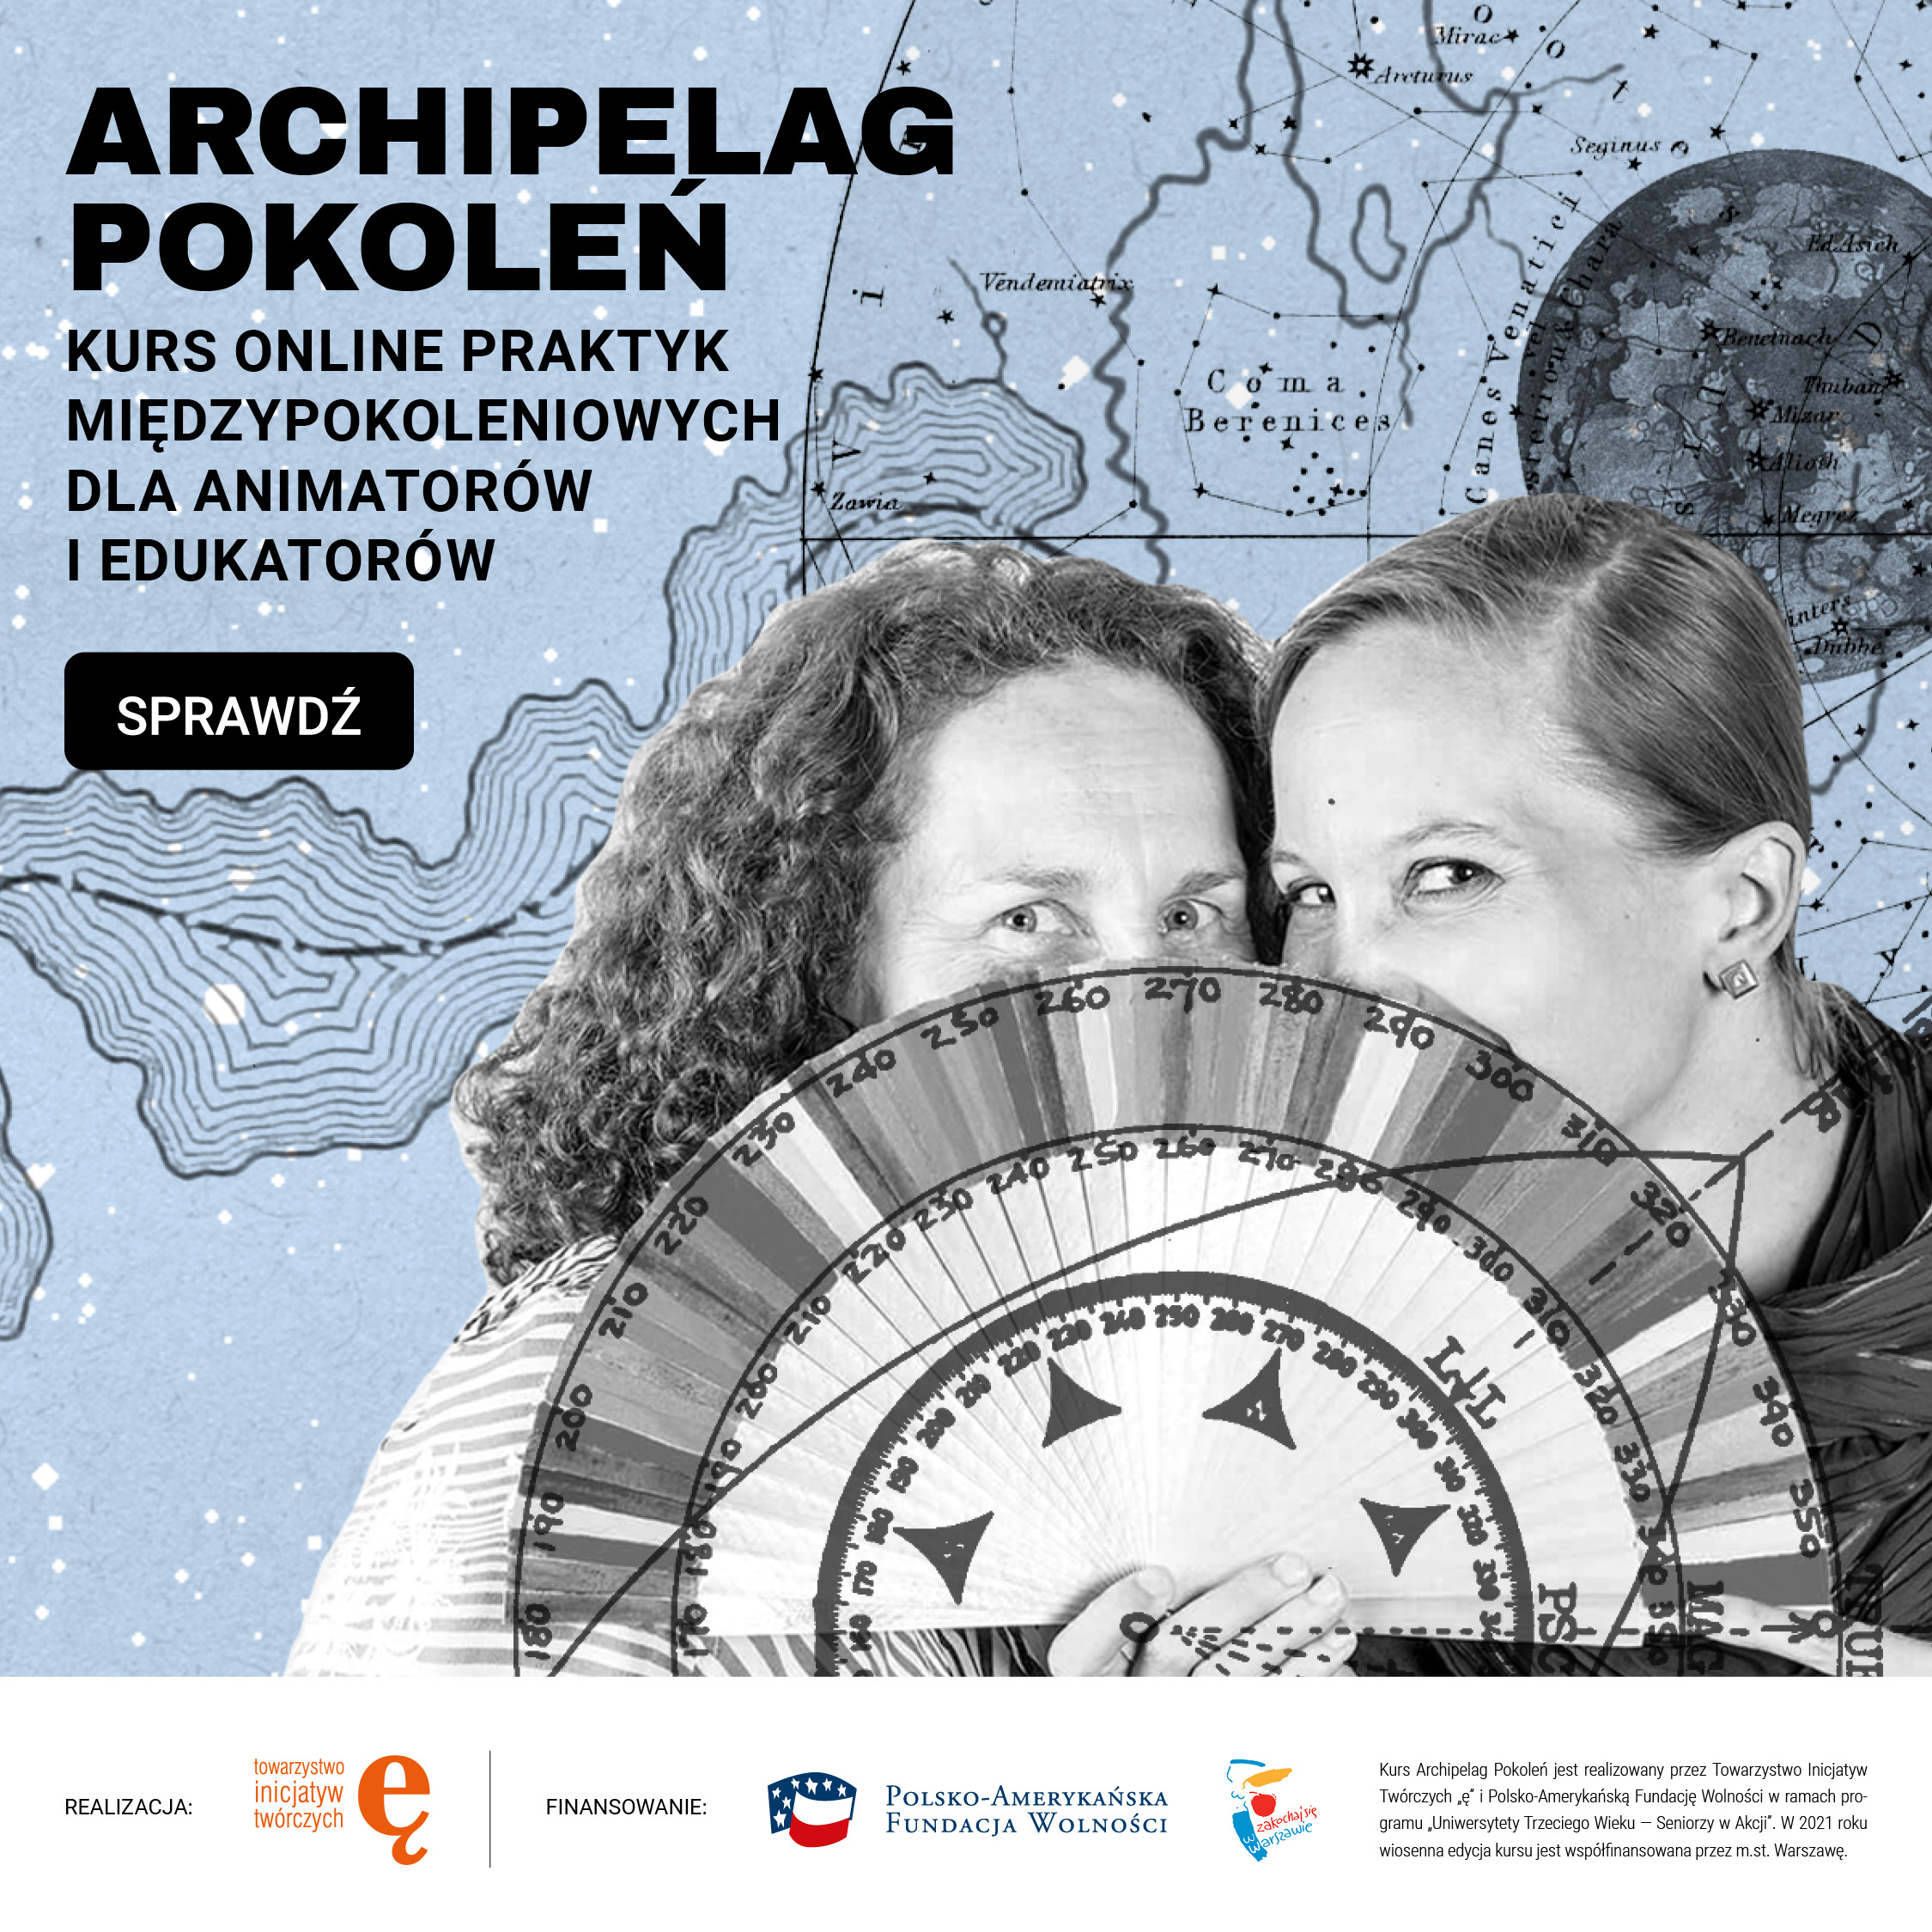 Archipelag Pokoleń - bezpłatny kurs internetowy o współpracy międzypokoleniowej - edycja wiosenna